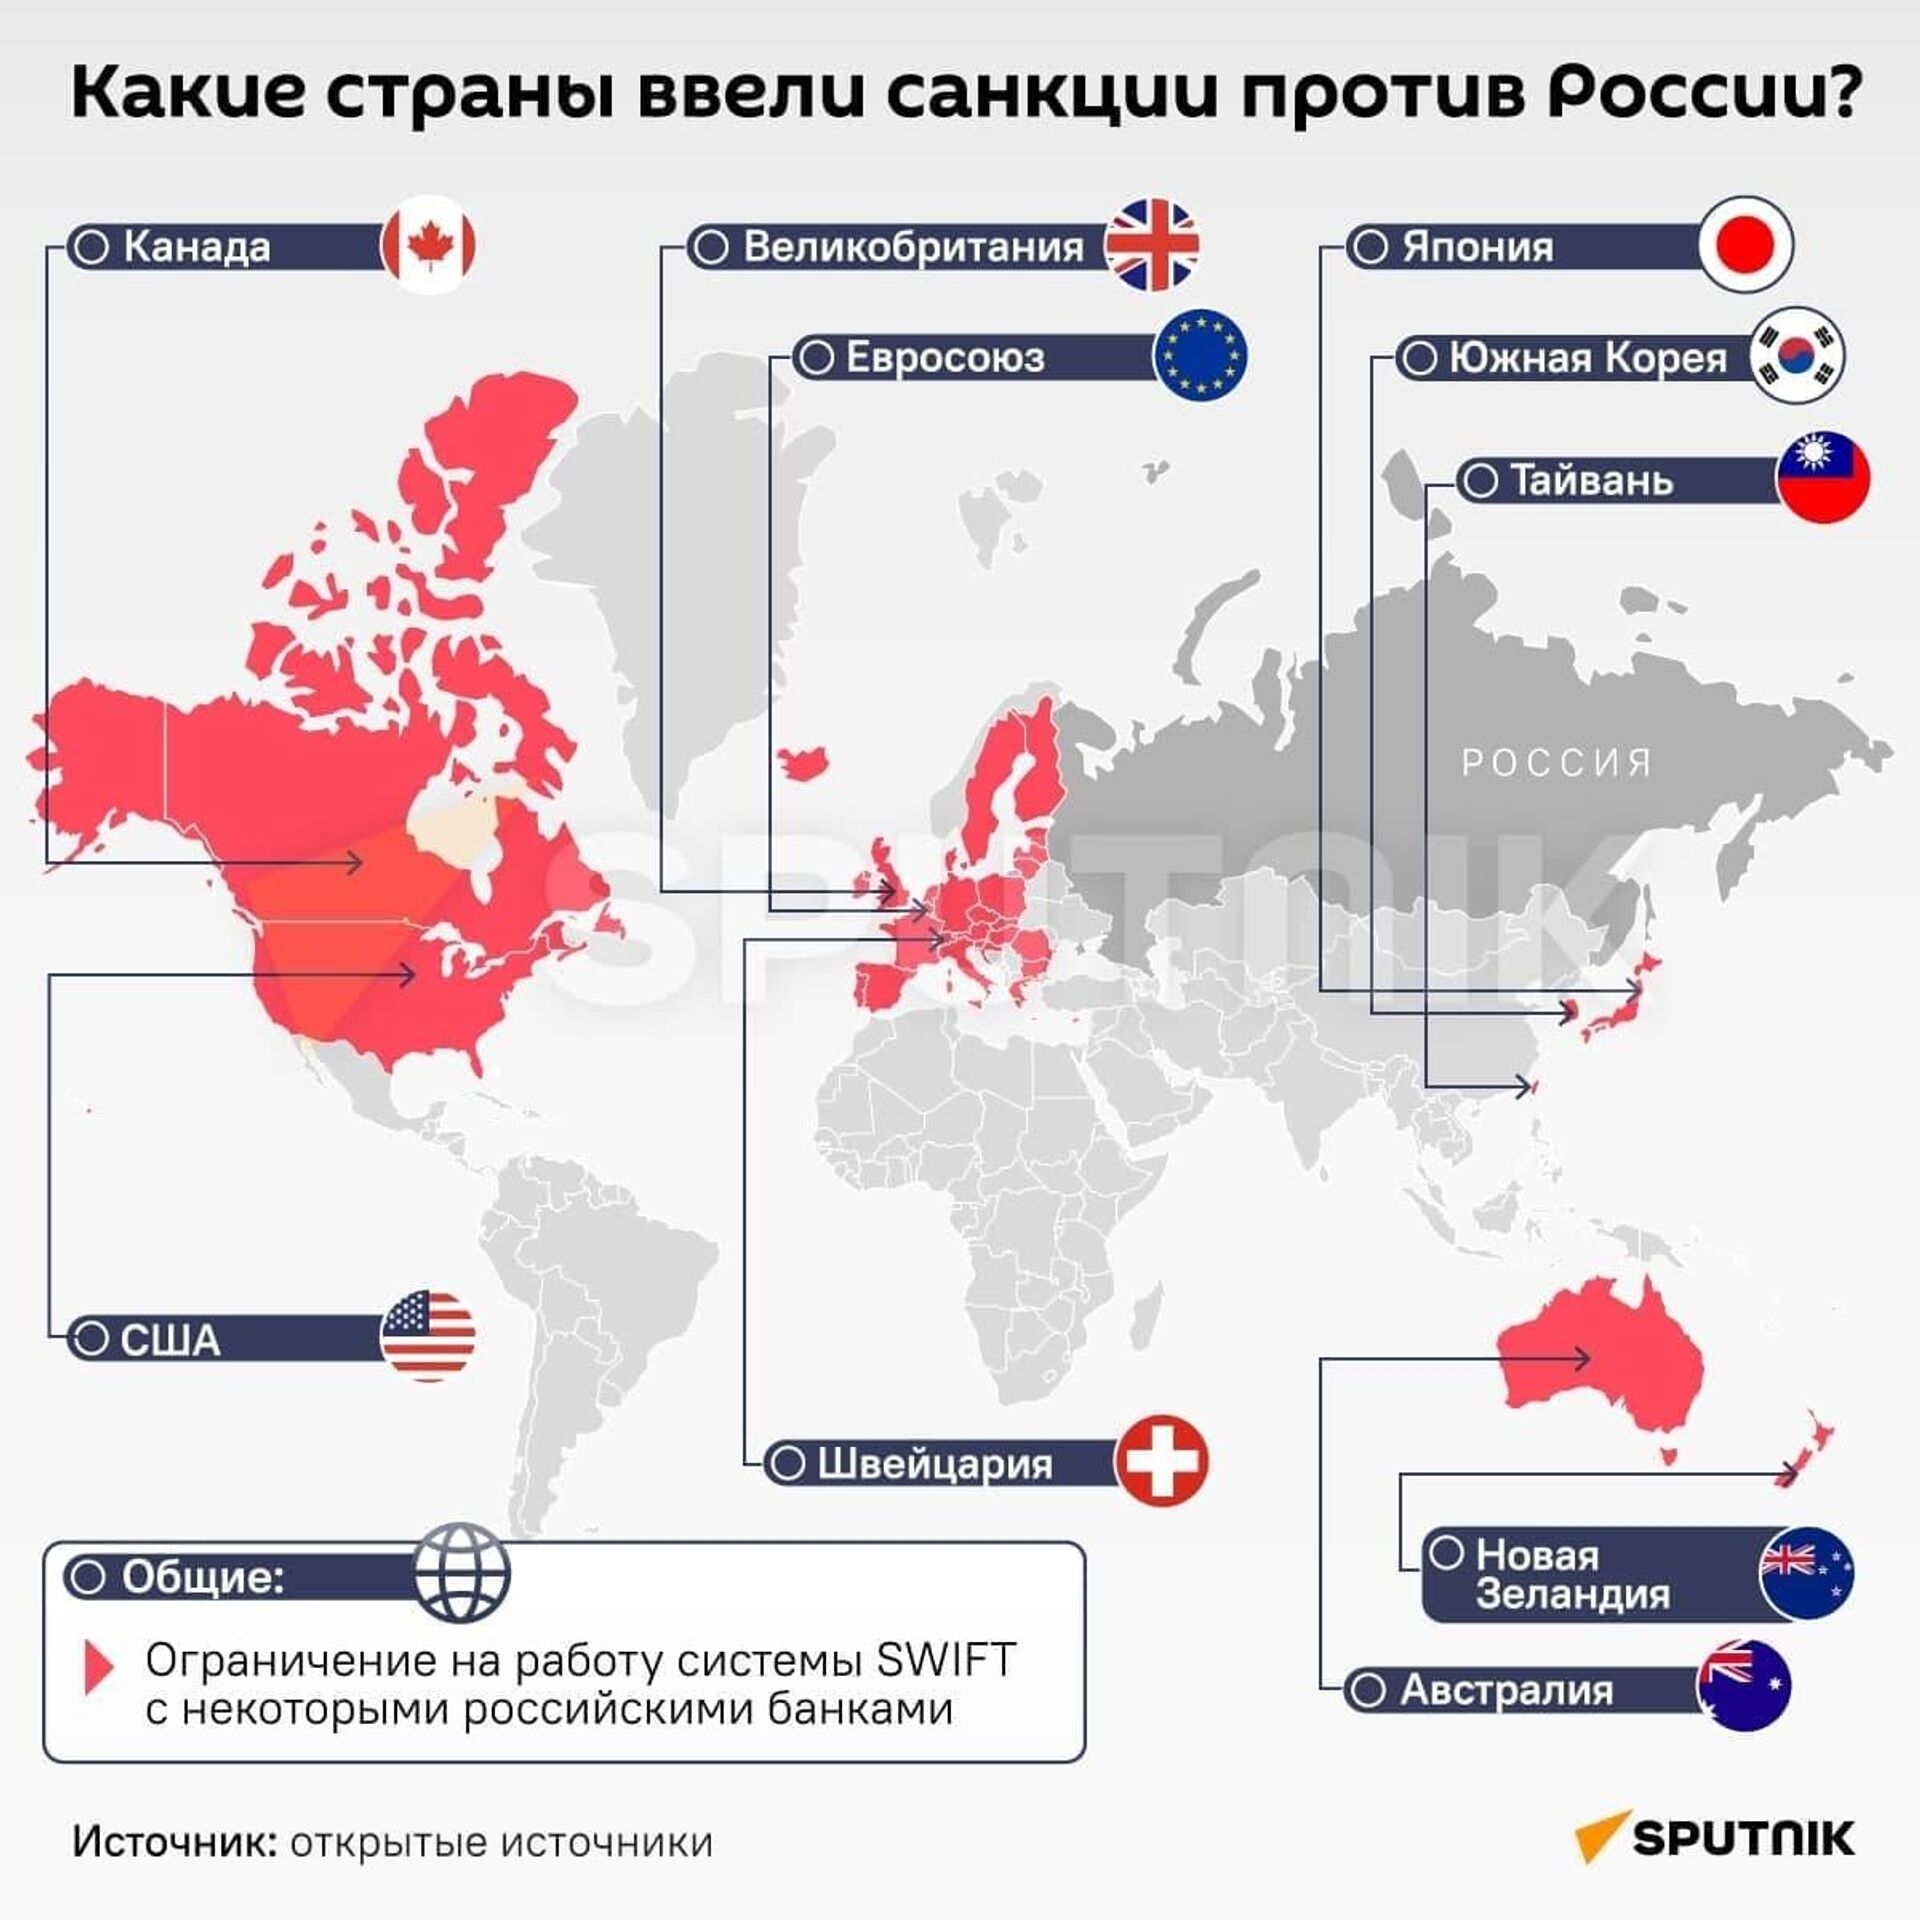 Какие страны ввели санкции против Росиии - Sputnik Узбекистан, 1920, 02.03.2022